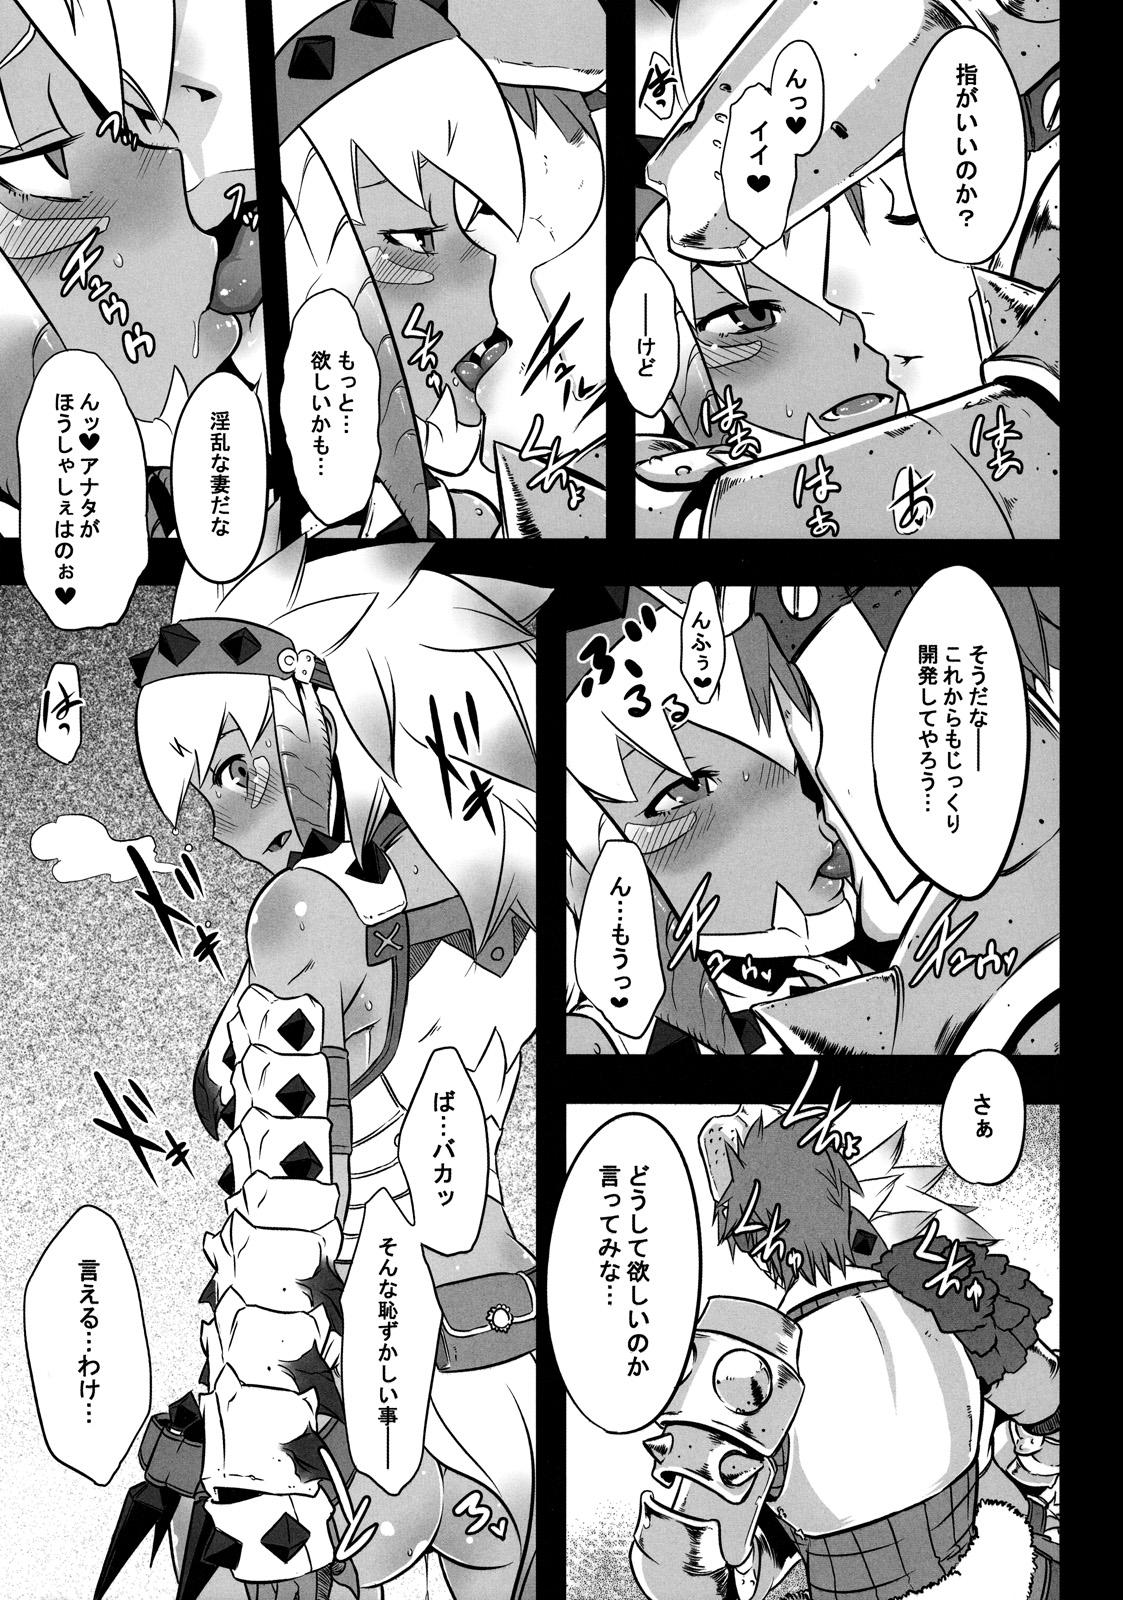 Speculum Hanshoku Nebura - Monster hunter Maid - Page 7